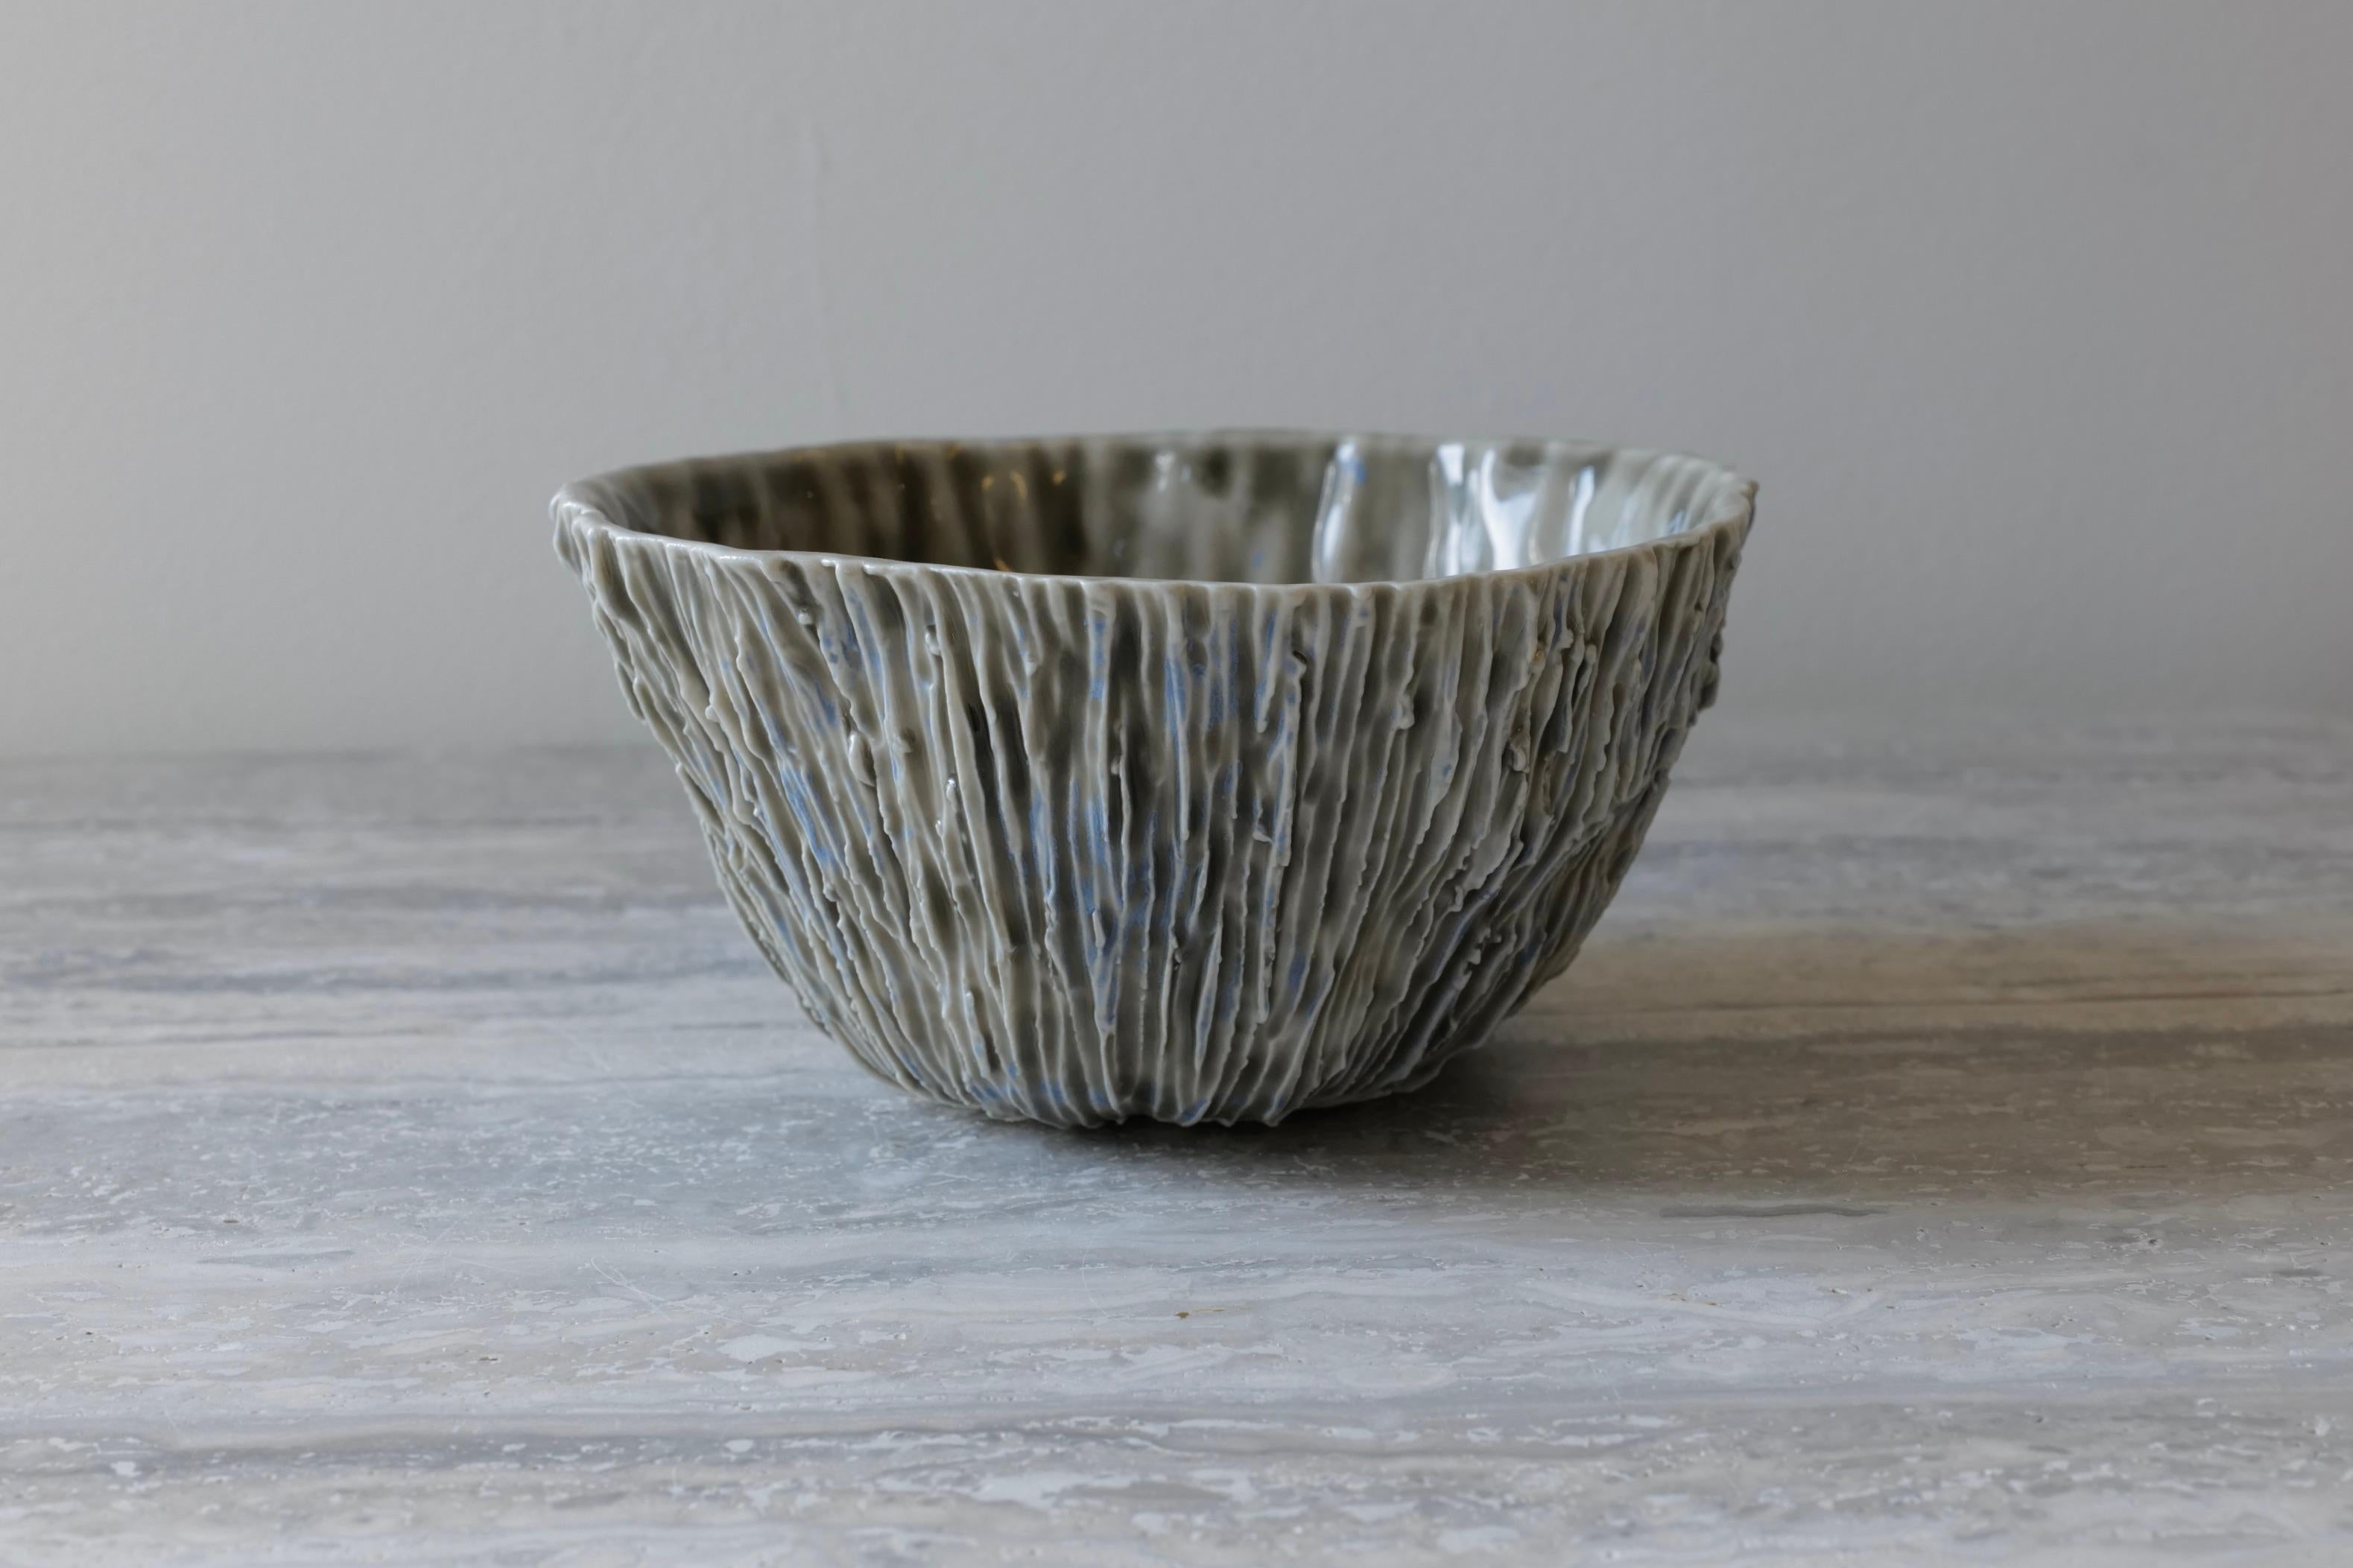 Rocks Porcelain Small Bowl by Lana Kova 2